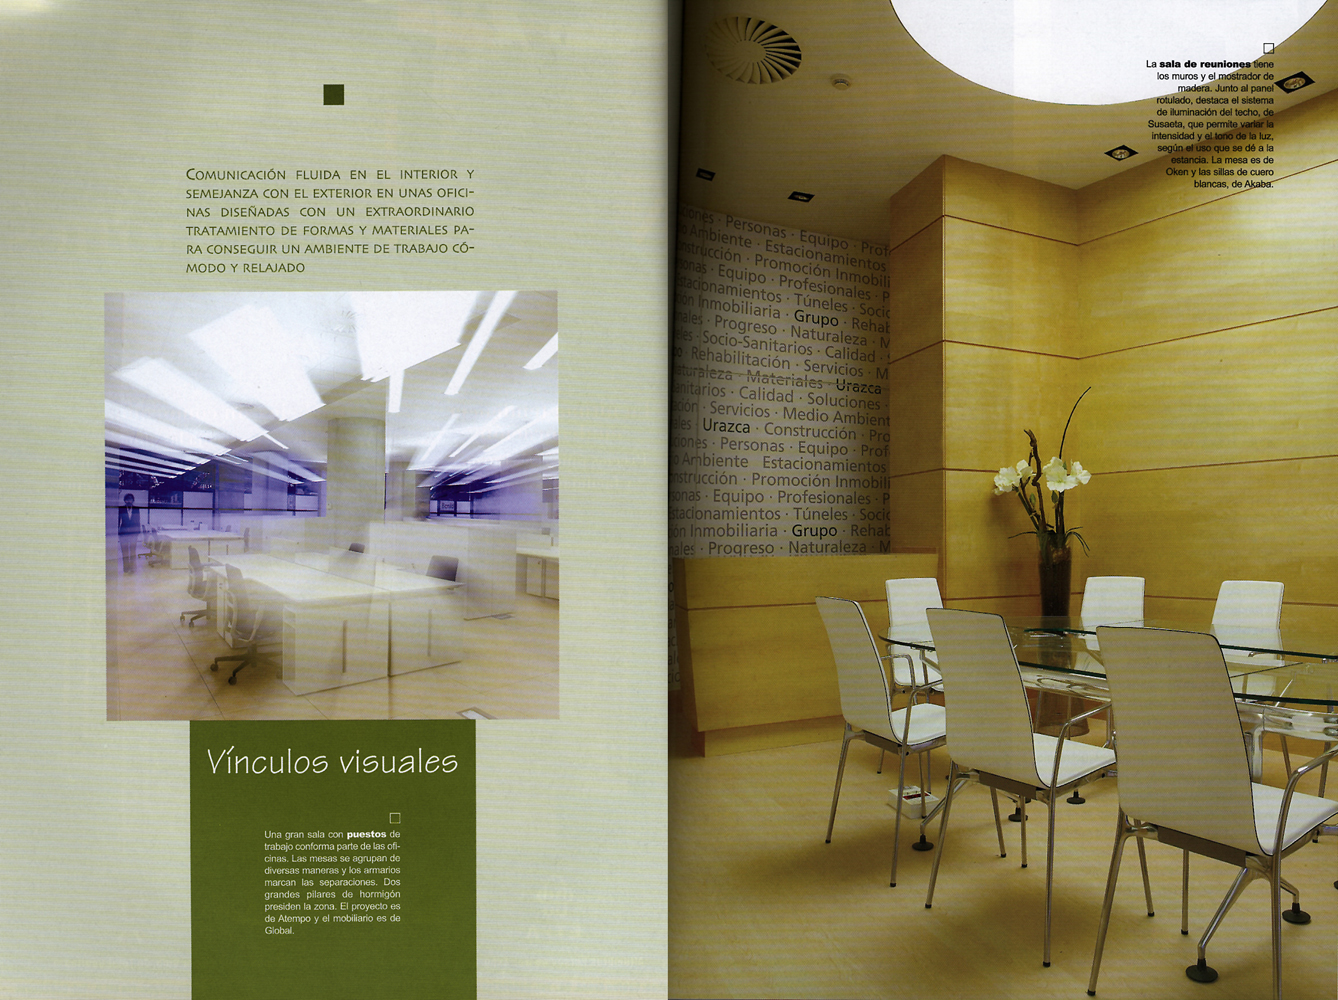 Diseño de oficinas en "ESPACIOS" Guía de interiorismo País Vasco